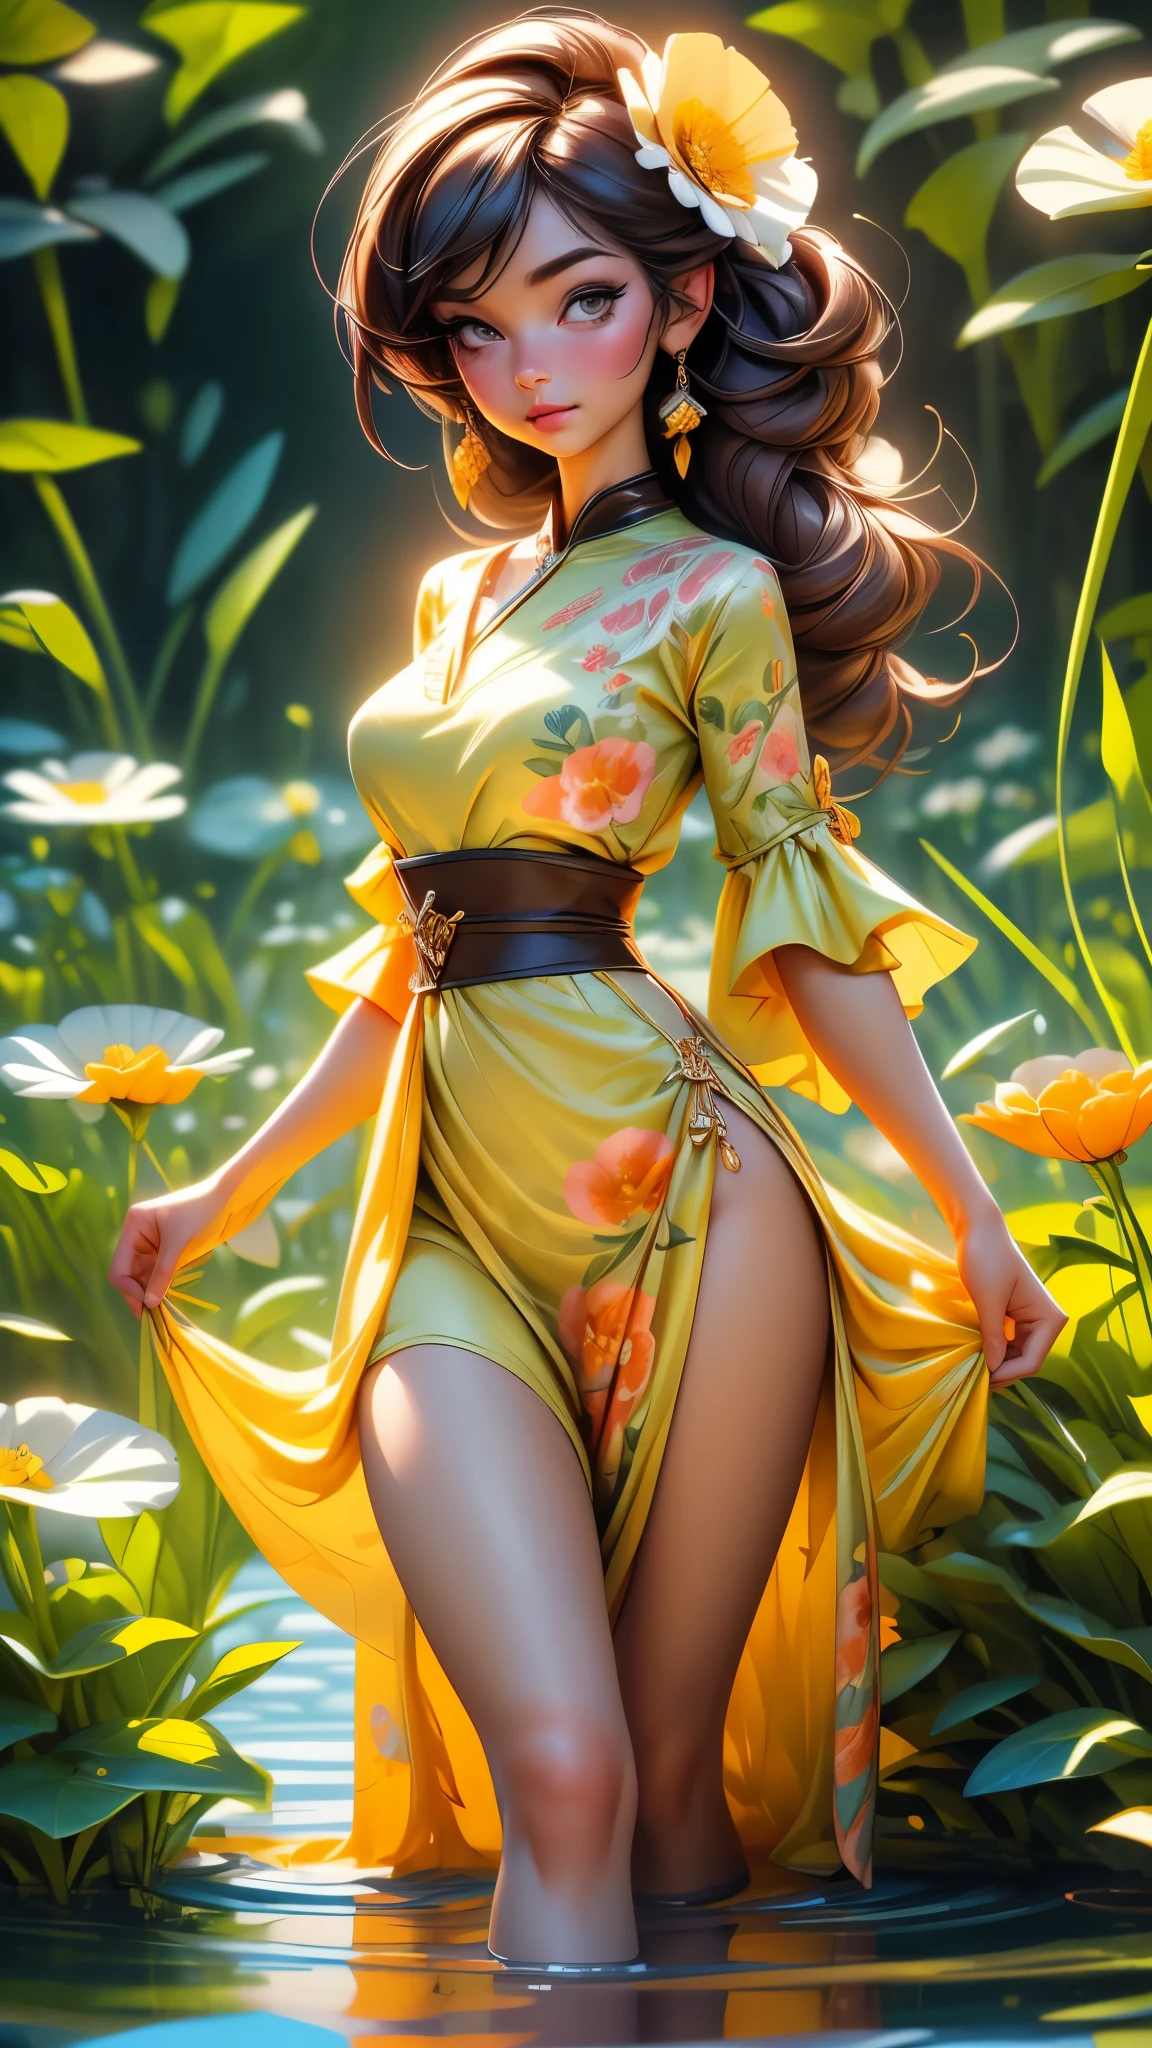 (最高品質,4K,8k,高解像度,傑作:1.2),ultra-詳細ed,(最高品質,現実的:1.2), hamabe, 素敵な女性,ケシの花畑,透け感のある黄色の花柄サマードレス,日没,遊ぶ,喜び,美しさ,調和,肖像画,柔らかな照明,鮮やかな色彩, 高解像度, 8k, 不条理な, シネスティル800, シャープなフォーカス, 追加_詳細:2, ウルトラHD | | | ((フルボディショット)) 追加_詳細:2 (1女性, 一人で)